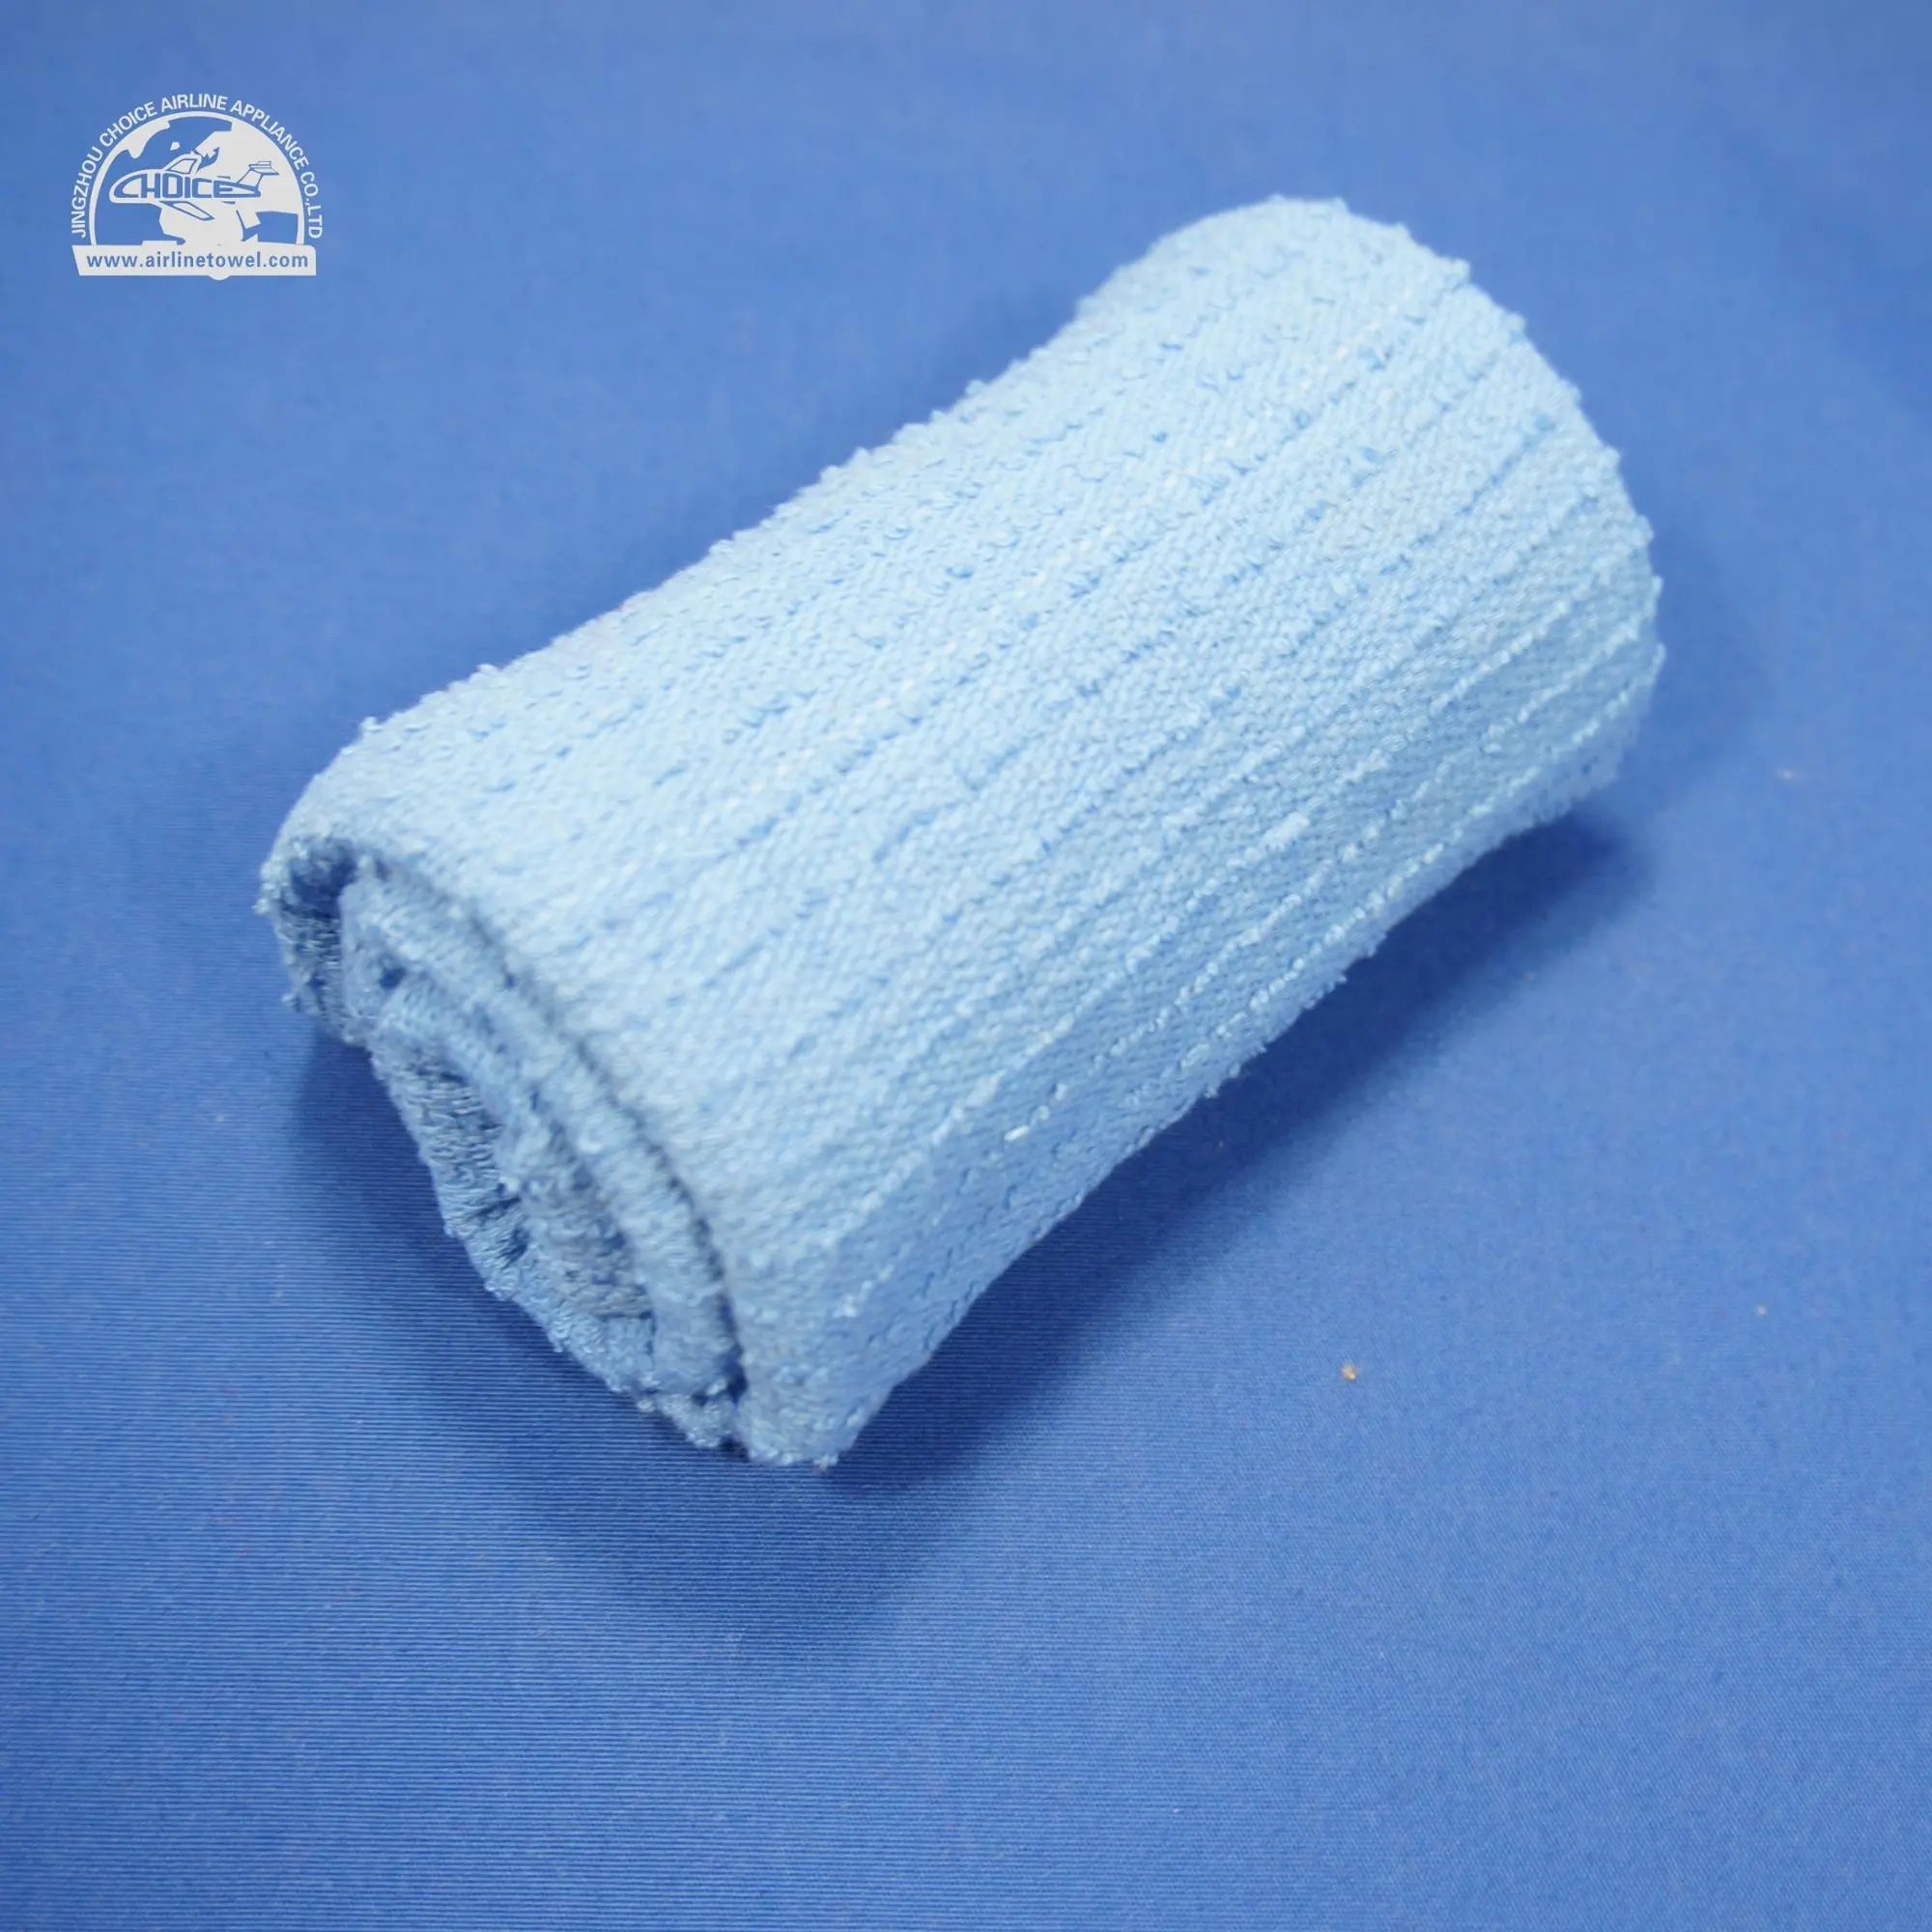 Asciugamani per la pulizia della cucina asciugamani da bar asciugamano per piatti vestiti